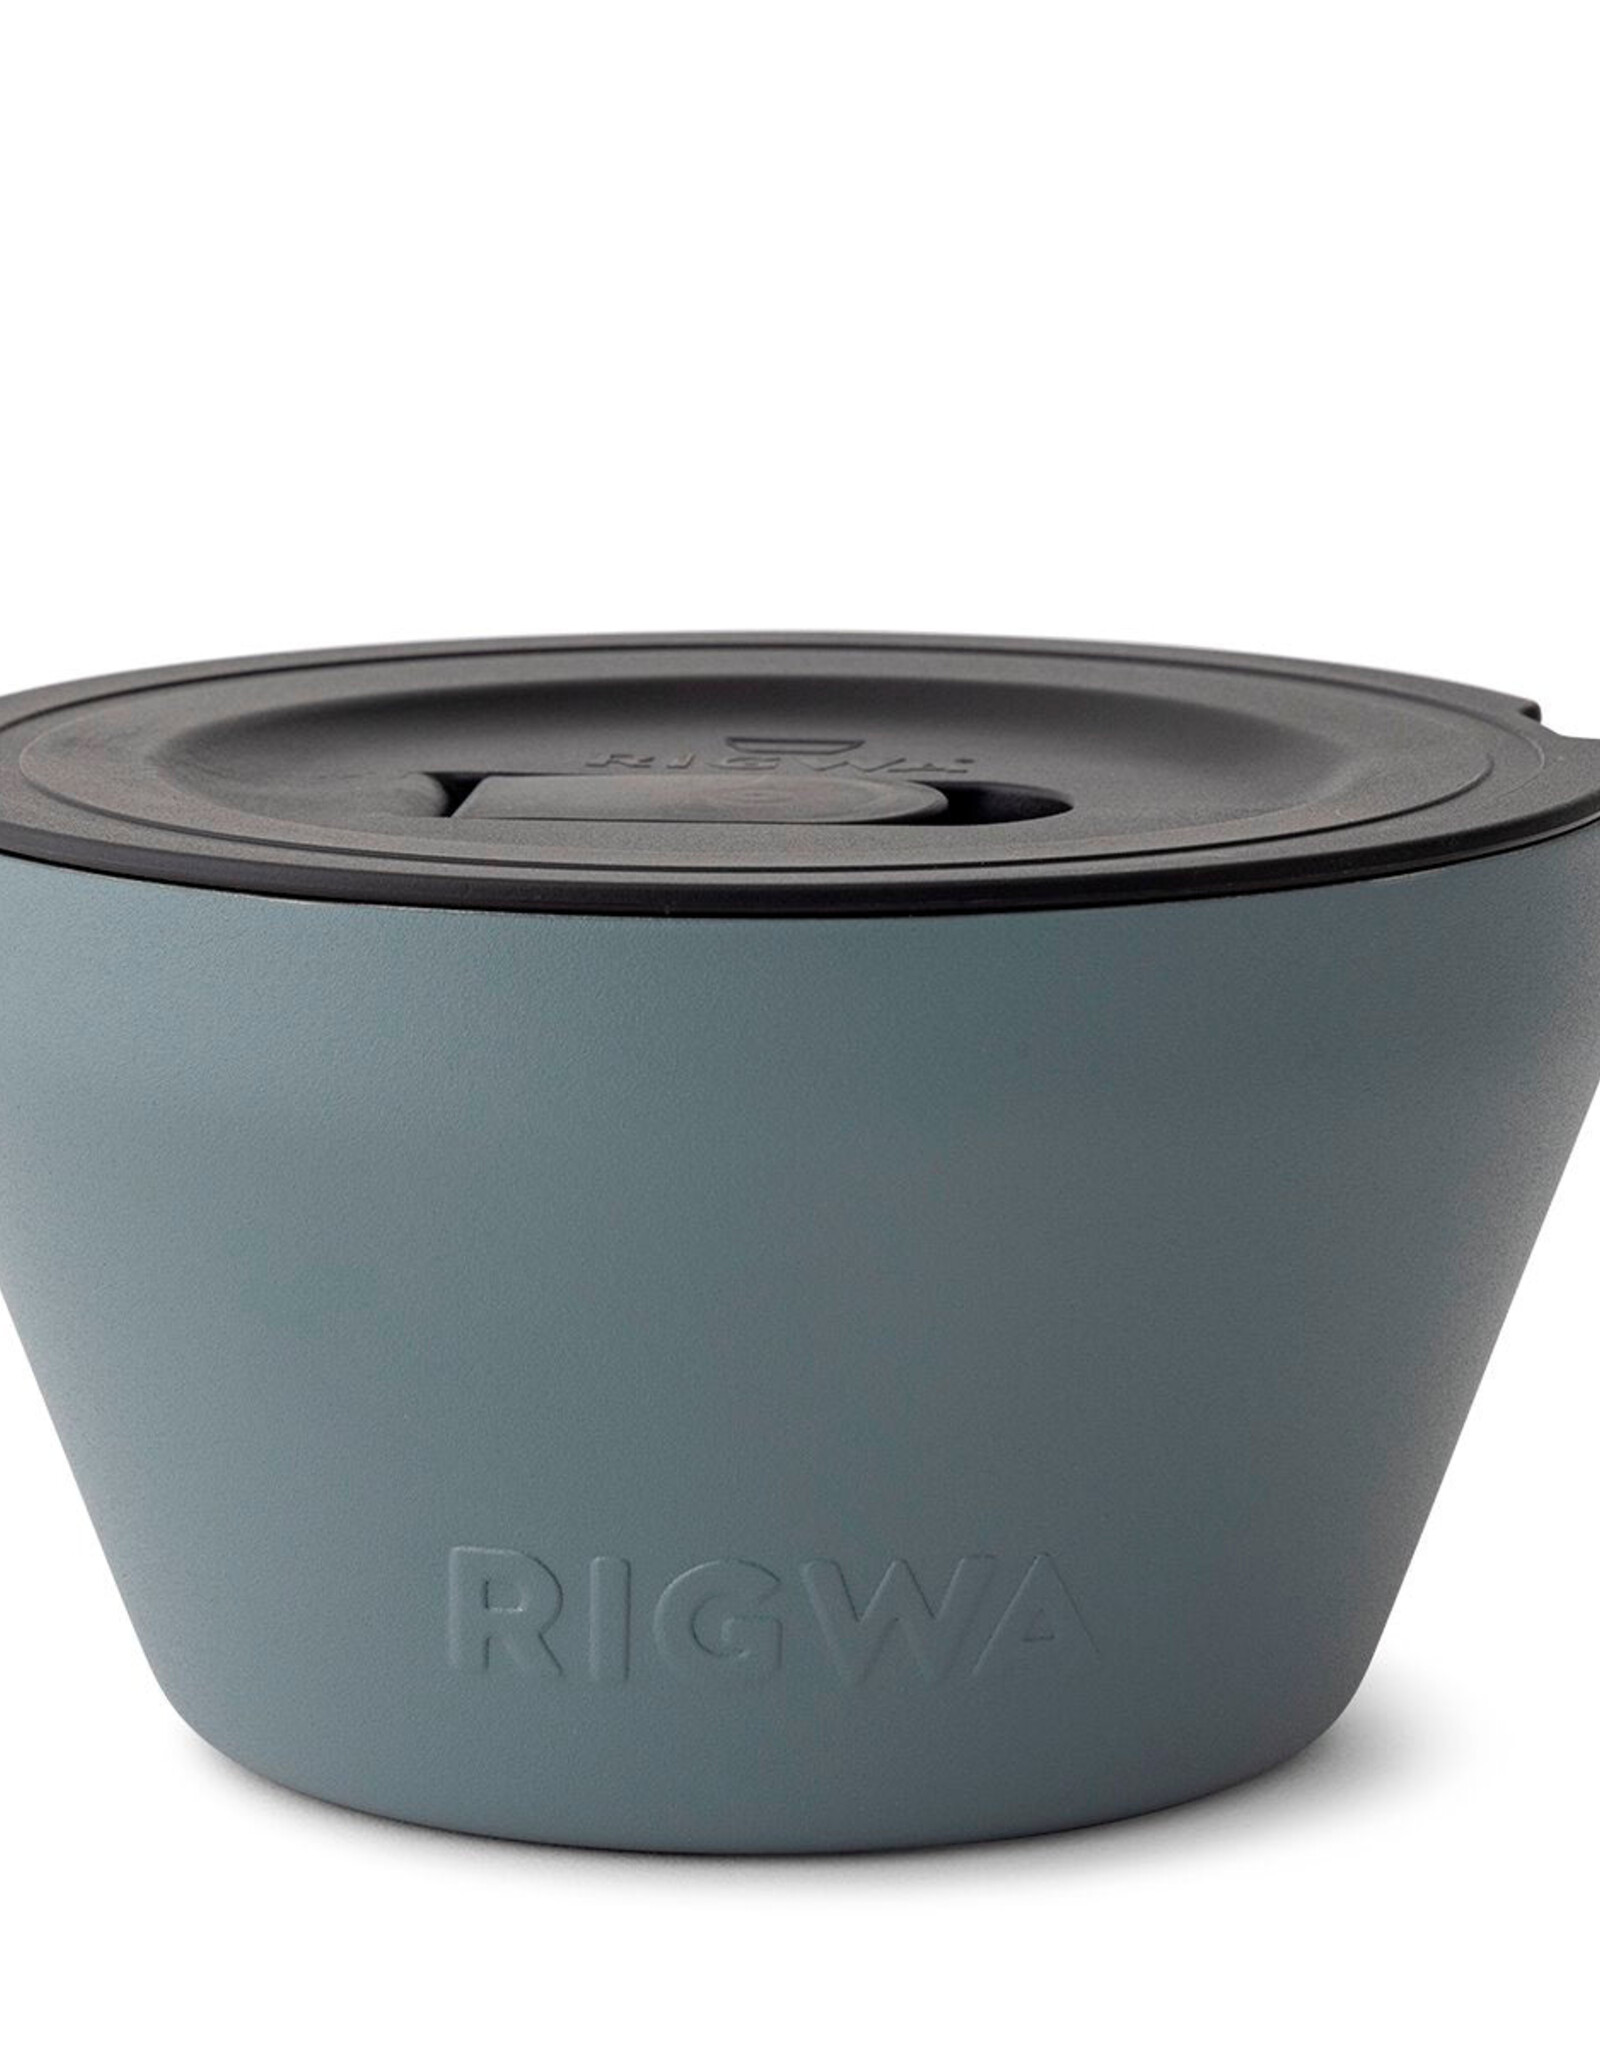 Rigwa Rigwa Fresh Bowl (40oz)